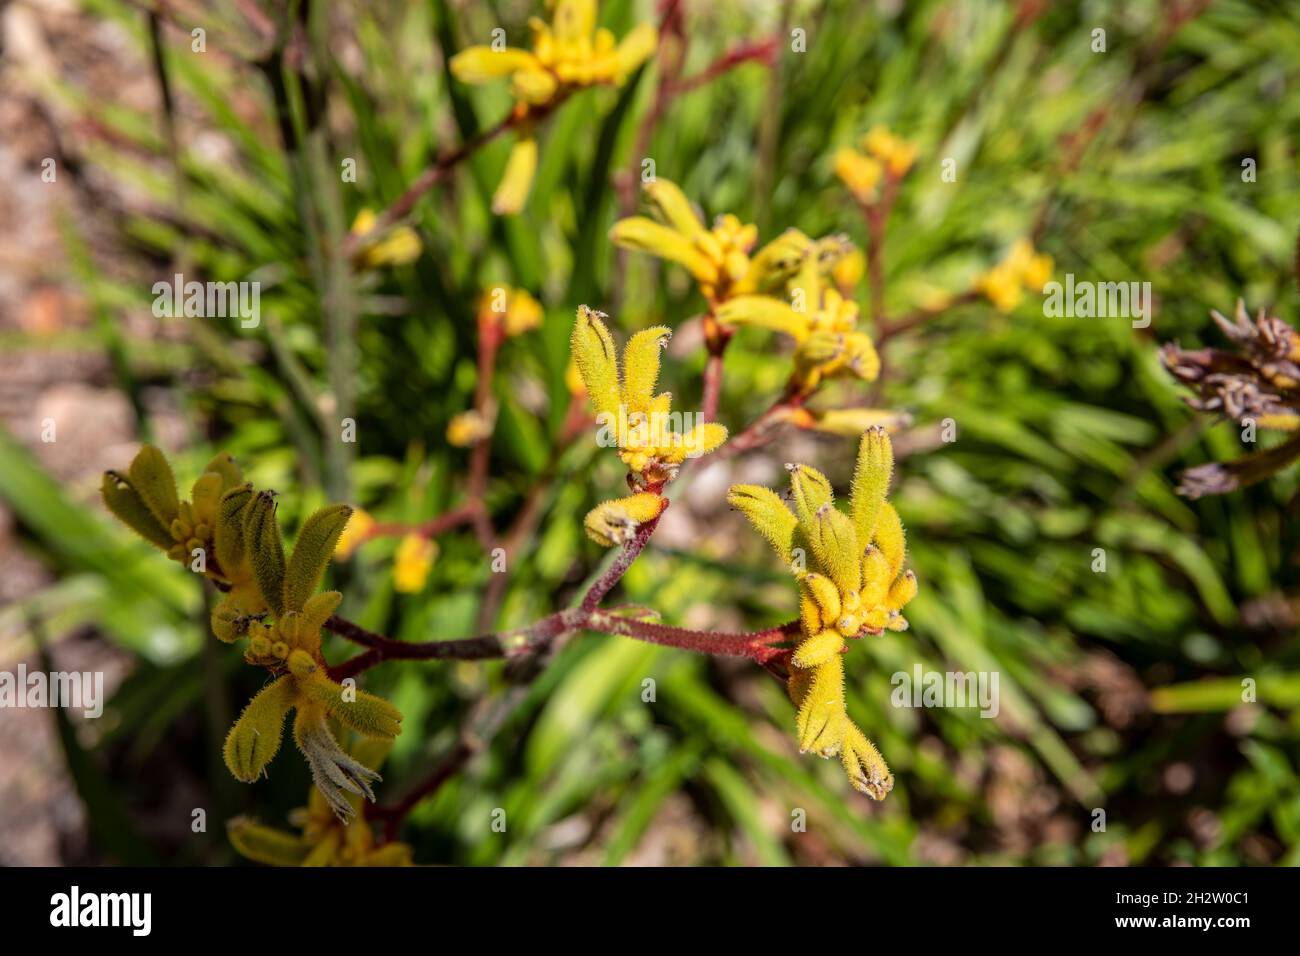 Haemodoraceae, planta de pata canguro en flor. La planta es nativa de Australia Occidental, representada en un jardín de Sydney, NSW, Australia Foto de stock